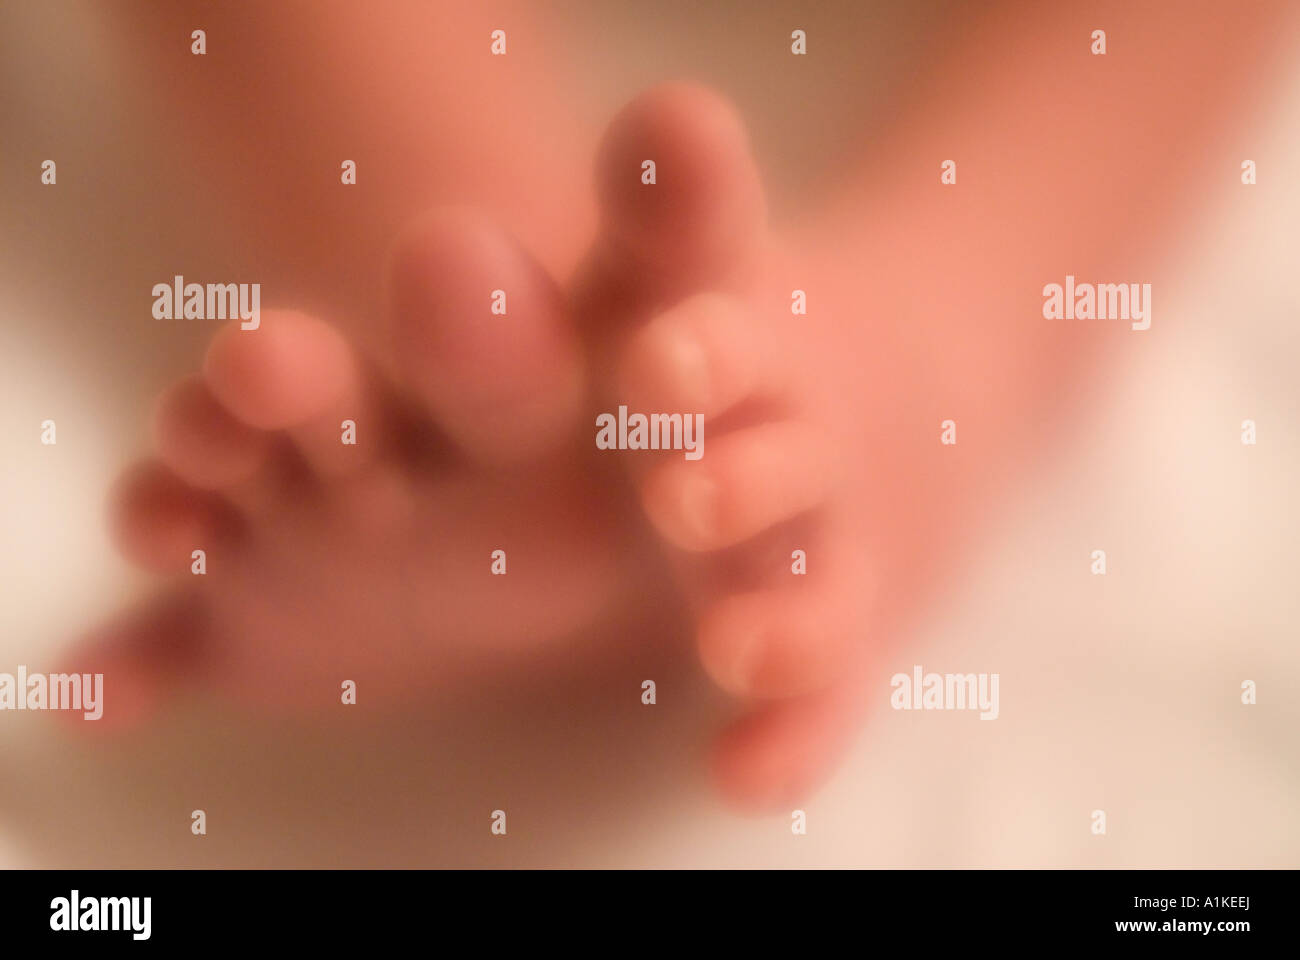 Pieds de bébé nouveau-né âgé de 4 jours avec éclat rayonnant soft focus intentionnellement Banque D'Images